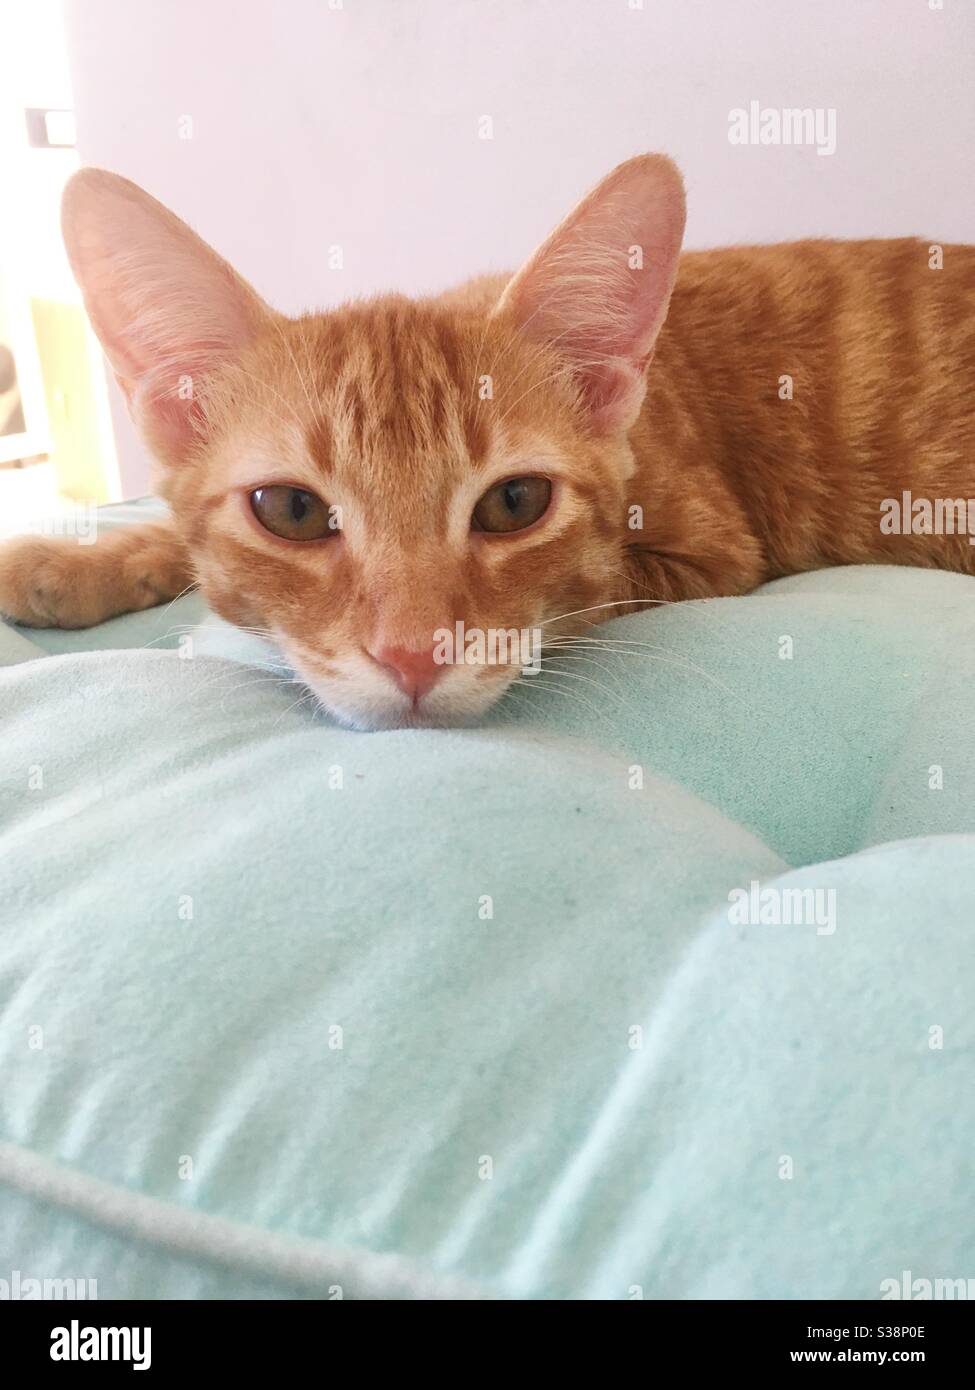 gato dulce tumbado en la almohada Foto de stock